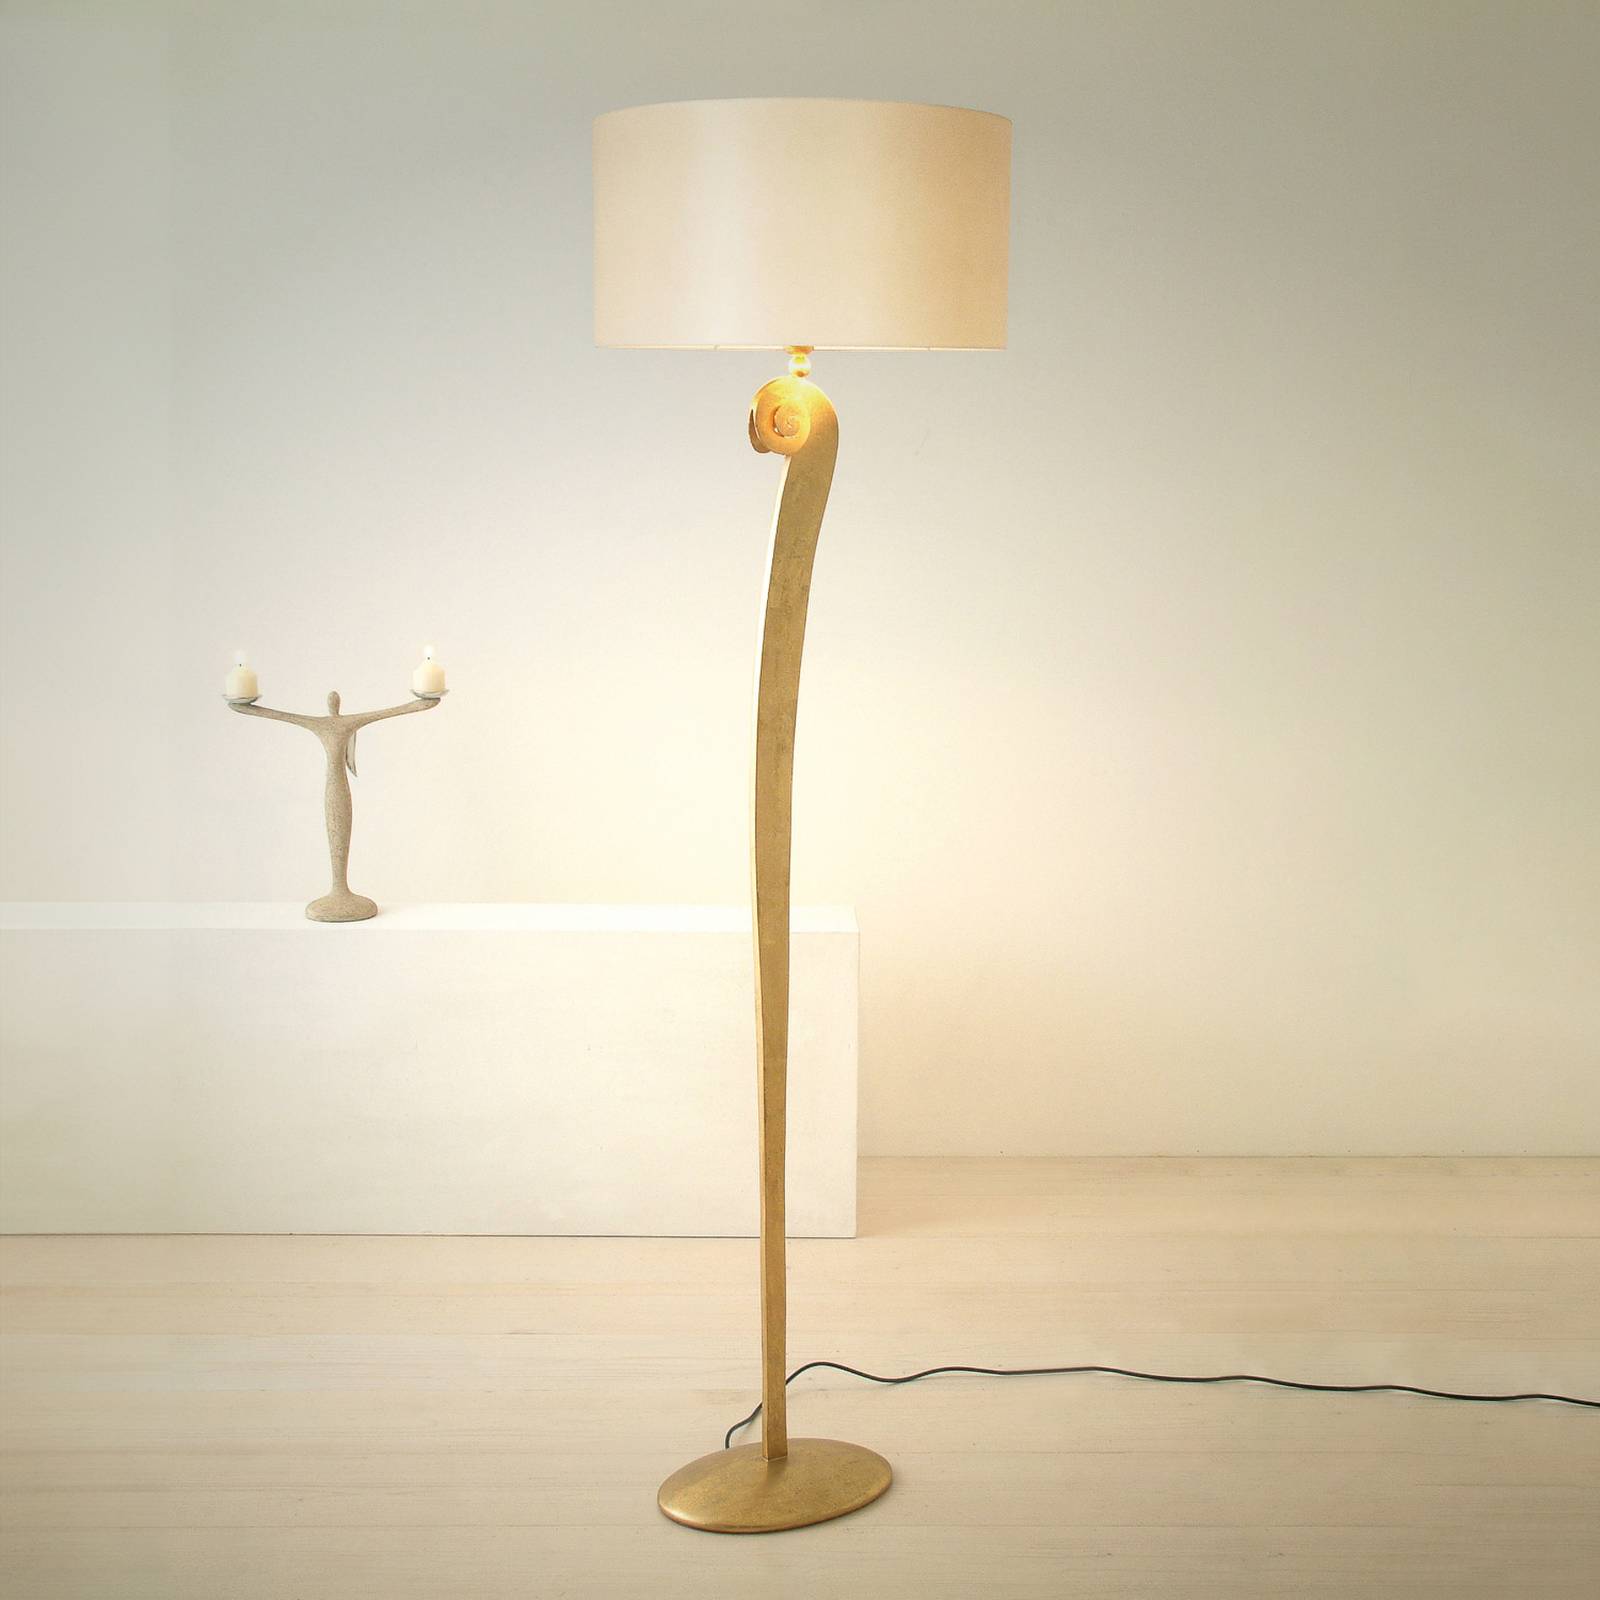 Holländer lino állólámpa, arany/ecru színű, 160 cm magas, vasból készült